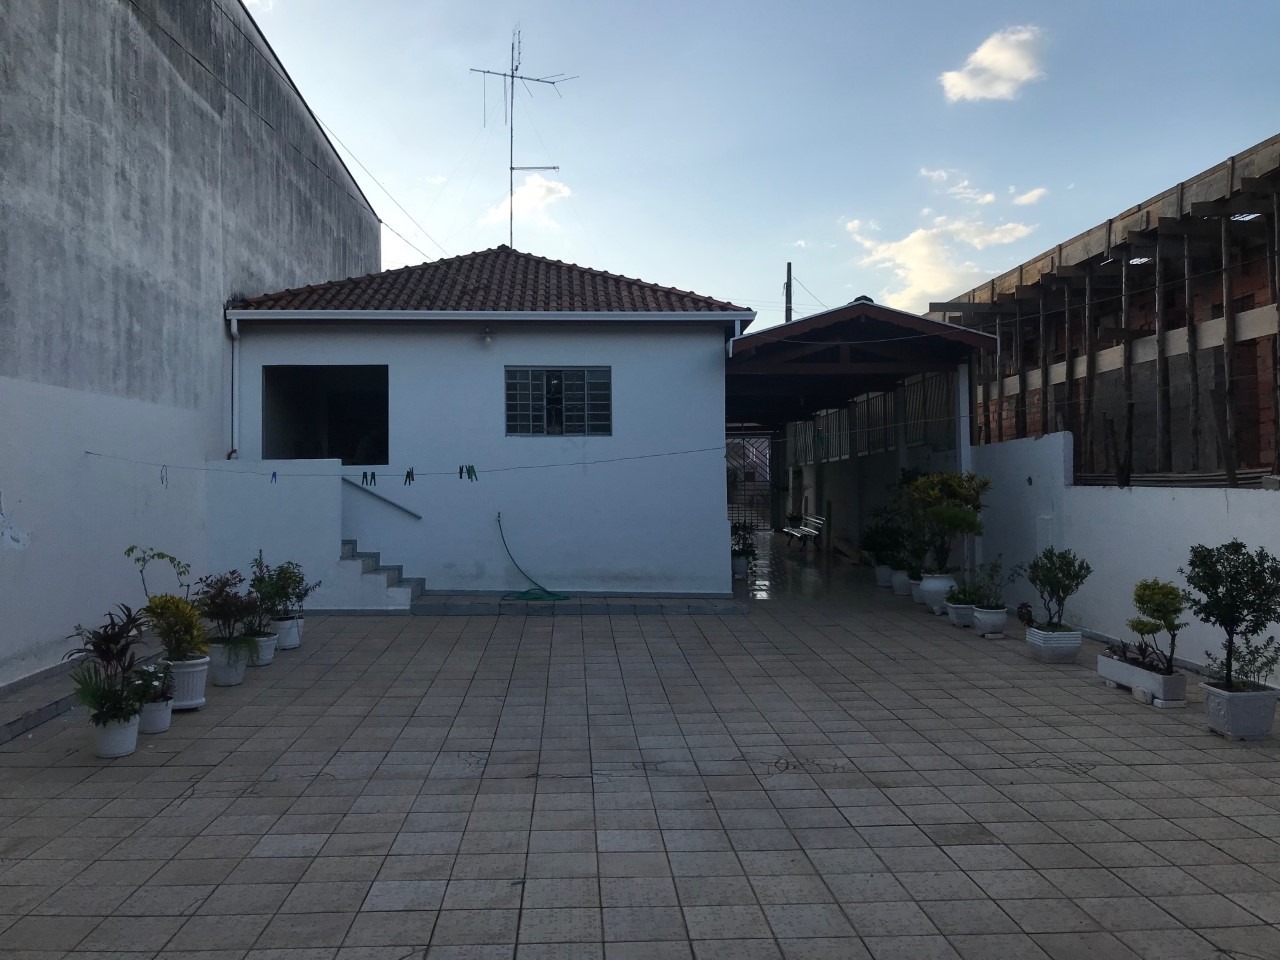 Casa para comprar, 2 quartos, 2 vagas, no bairro Areião em Piracicaba - SP